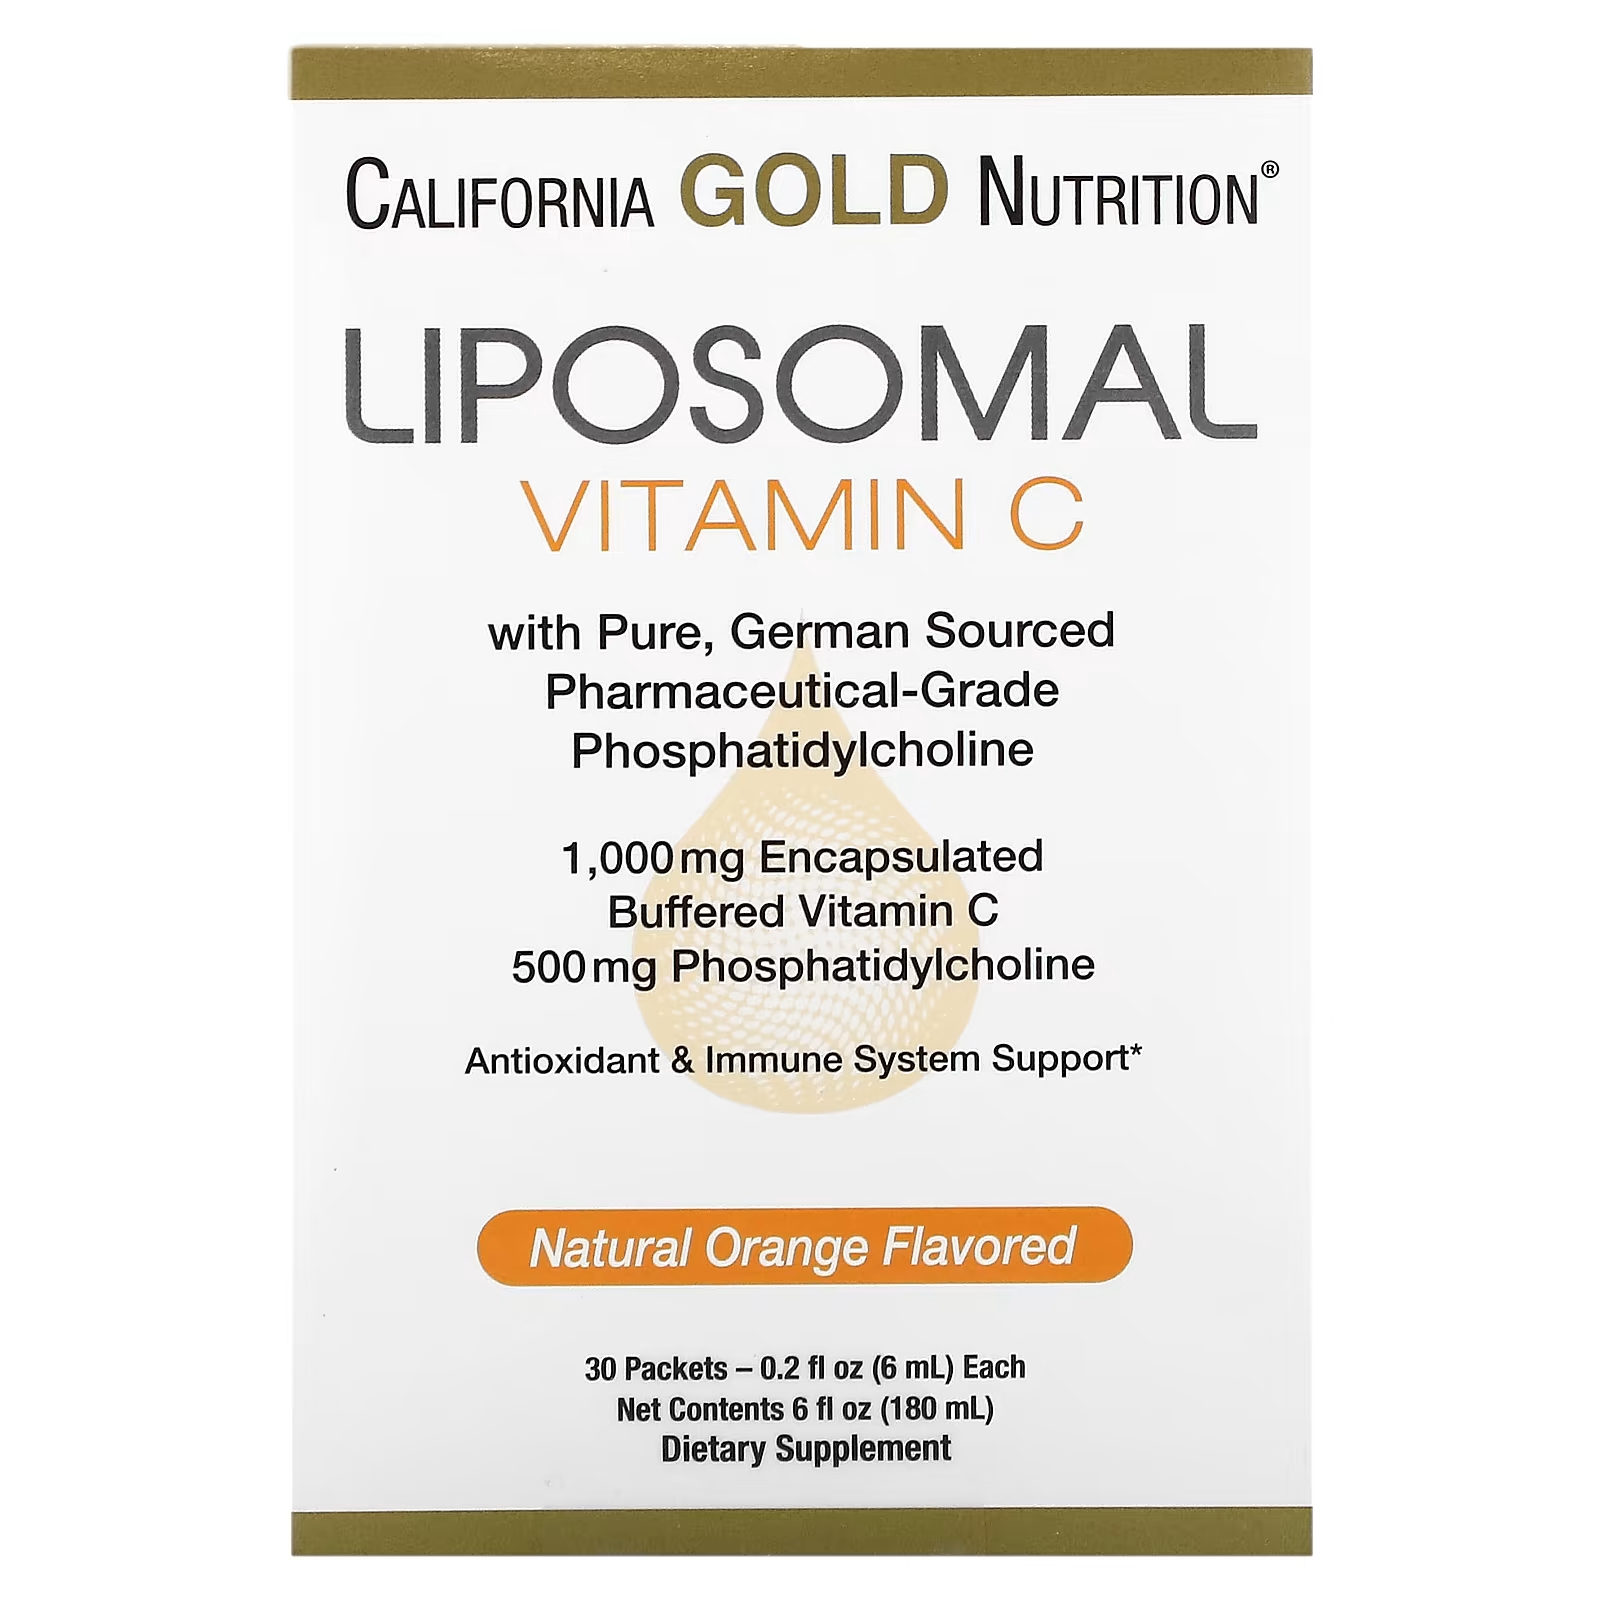 цена Липосомальный витамин С от California Gold Nutrition, 1000 мг, 30 пакетов по 0,2 жидких унции (6 мл) каждый